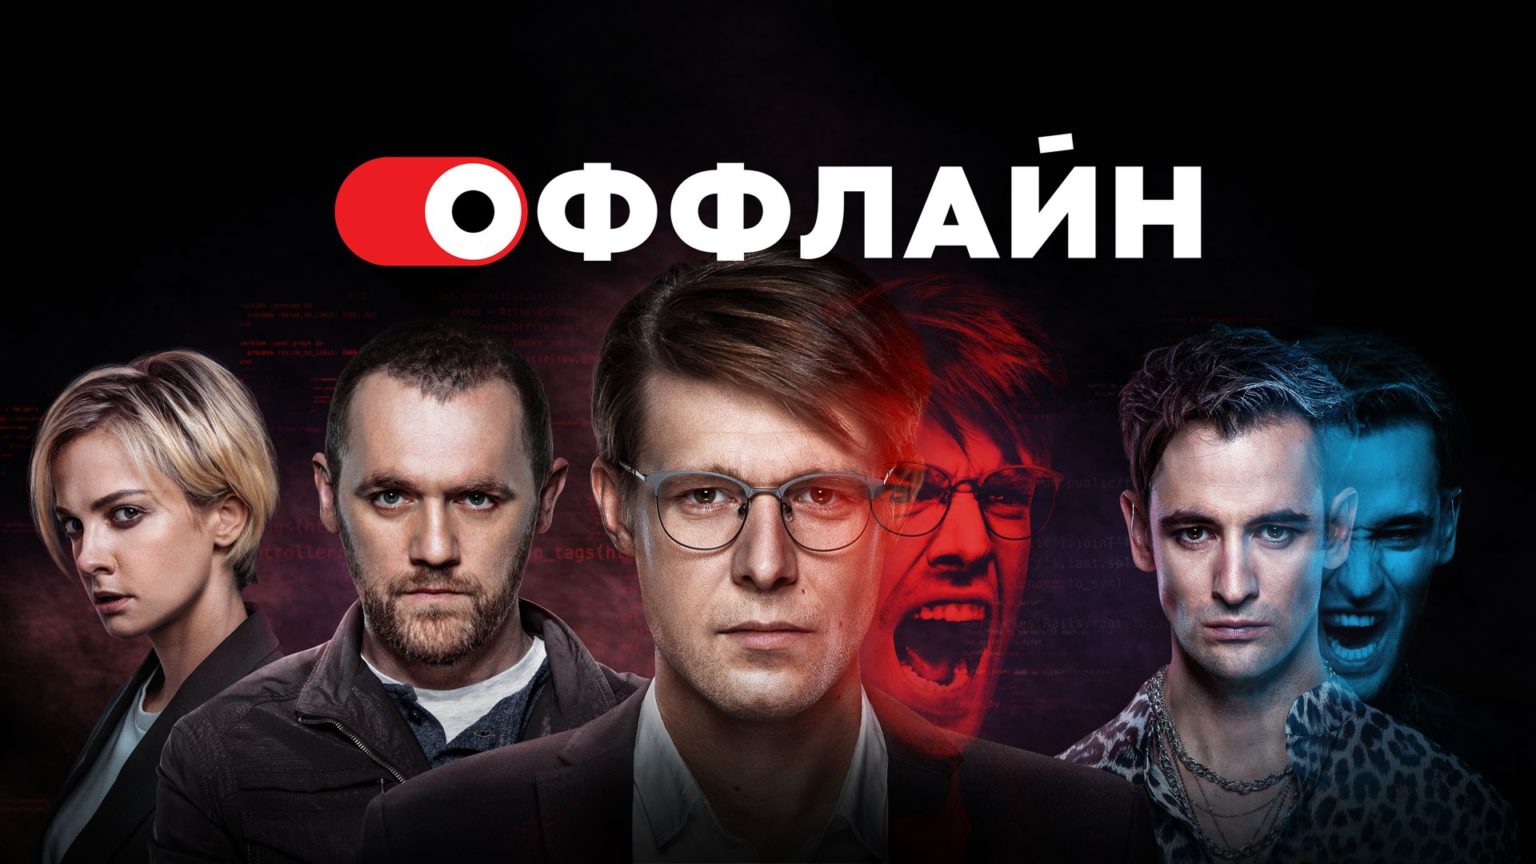 Премьера «Оффлайн 2.0» пройдёт в Калининграде